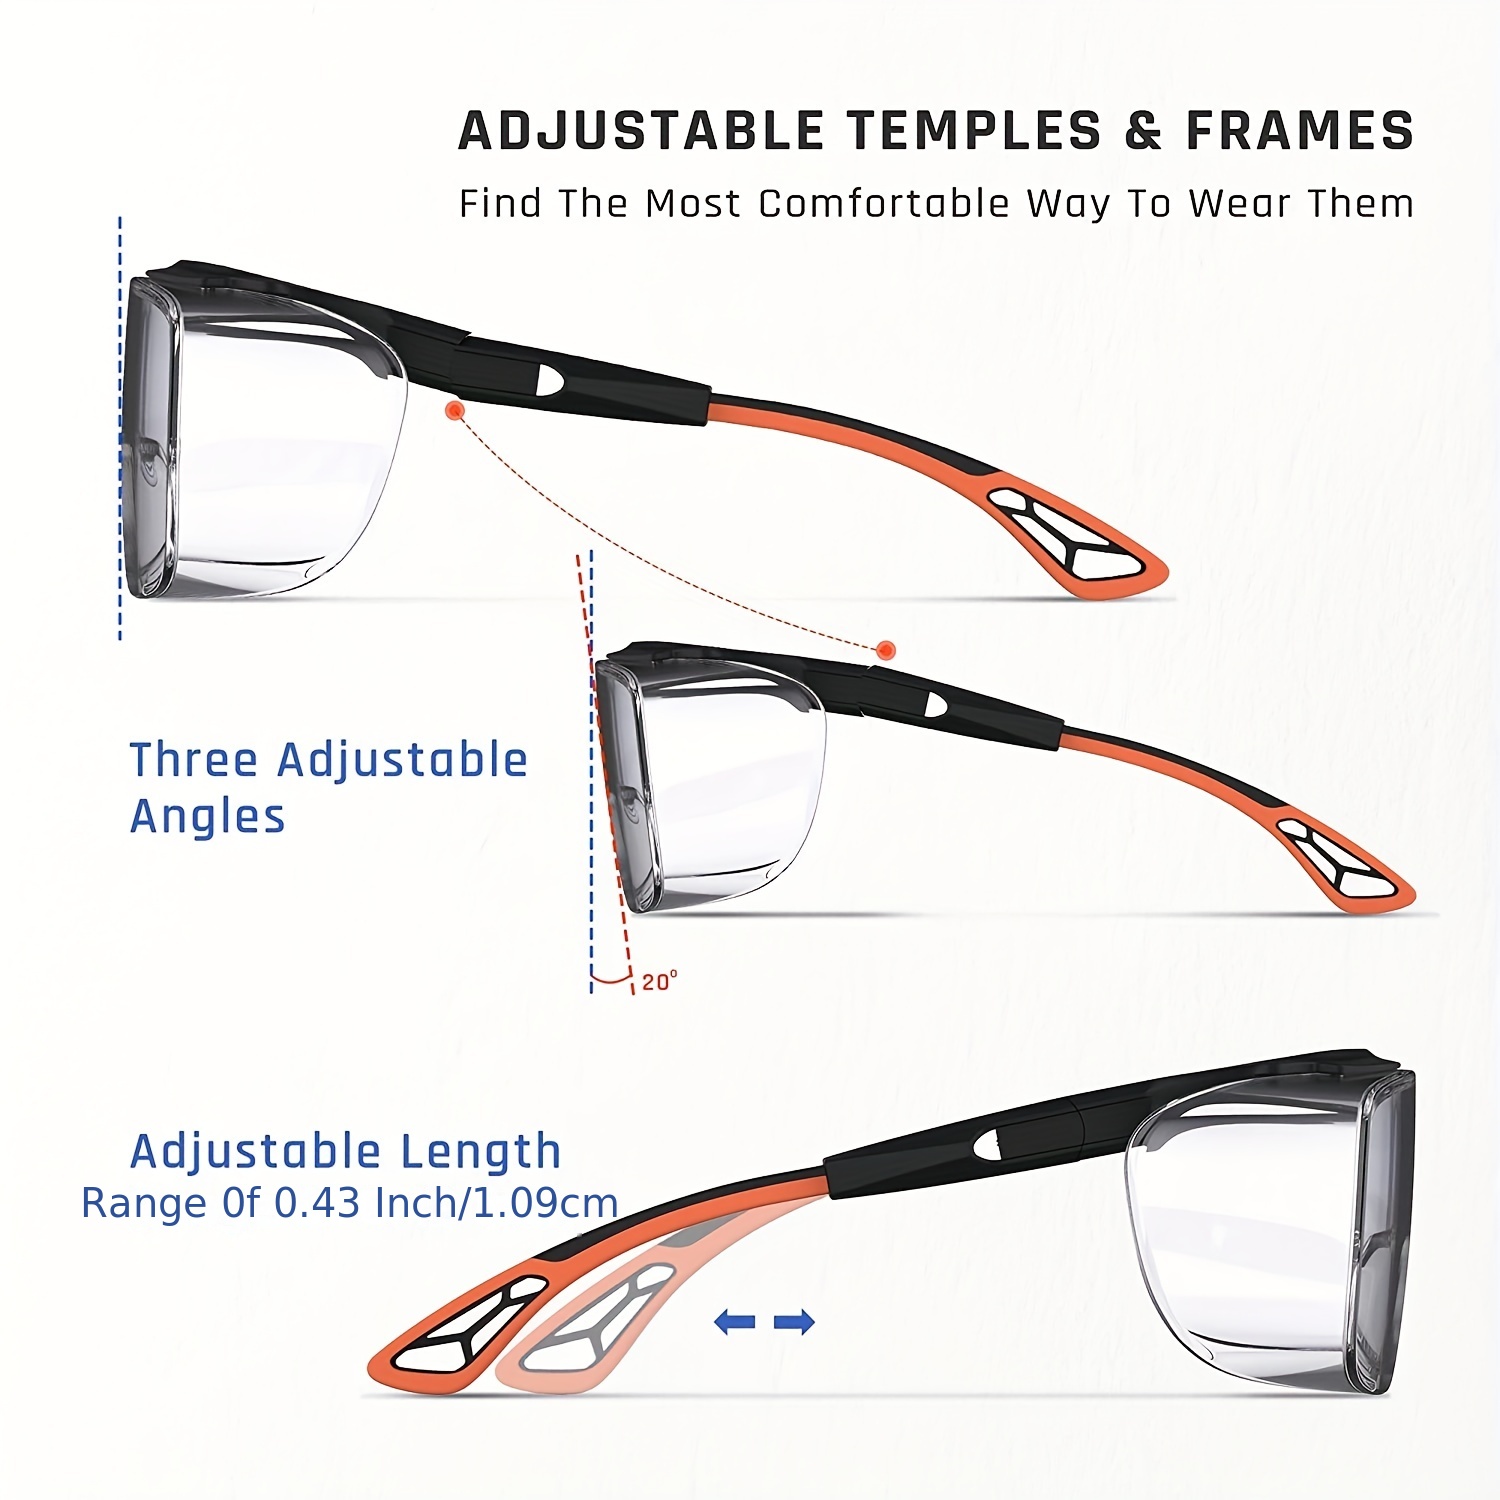 Gafas De Seguridad Para Protección Ocular Que Se Ajustan Sobre Las Gafas,  Unisex, Lentes Transparentes Con Revestimiento Antiempañamiento, Gafas De Se